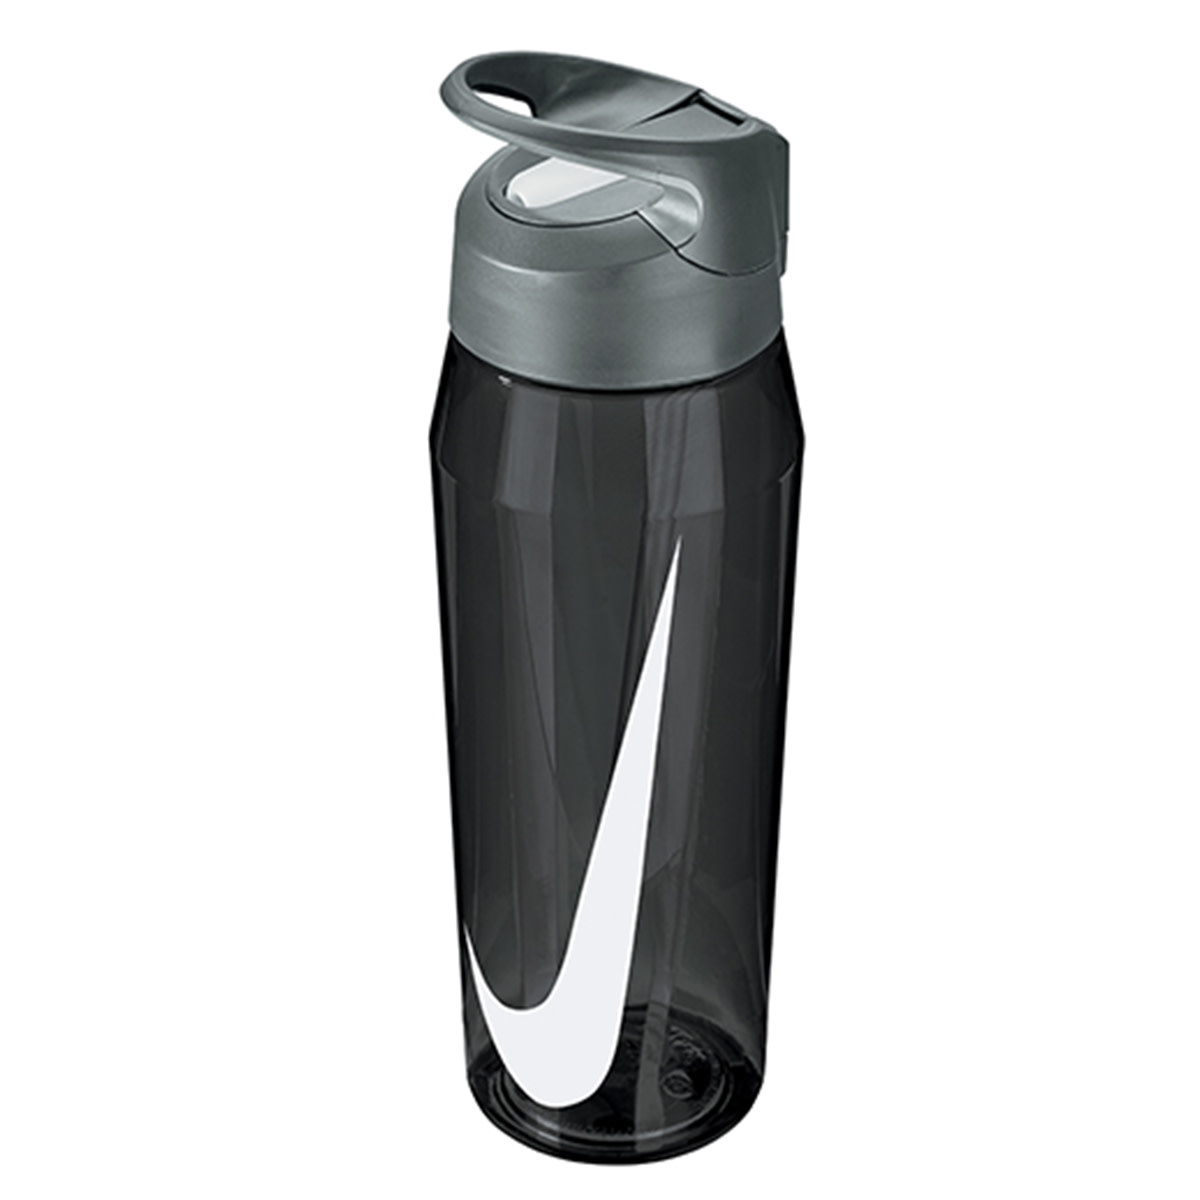 Nike Hyperfuel 24 oz Water Bottle Clear